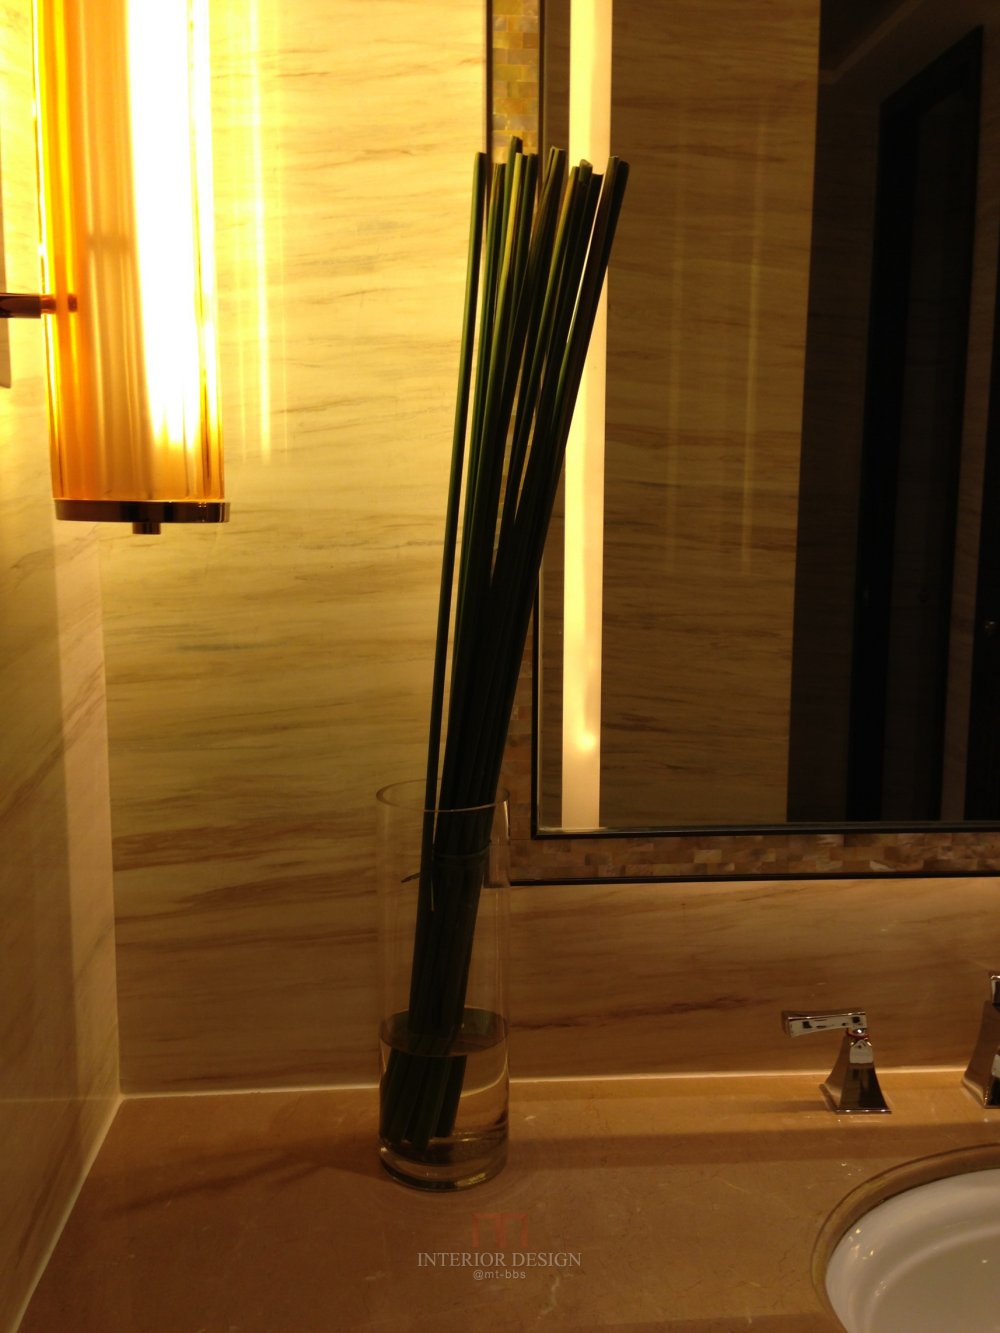 成都丽思卡尔顿酒店The Ritz-Carlton Chengdu(欢迎更新,高分奖励)_IMG_6396.JPG